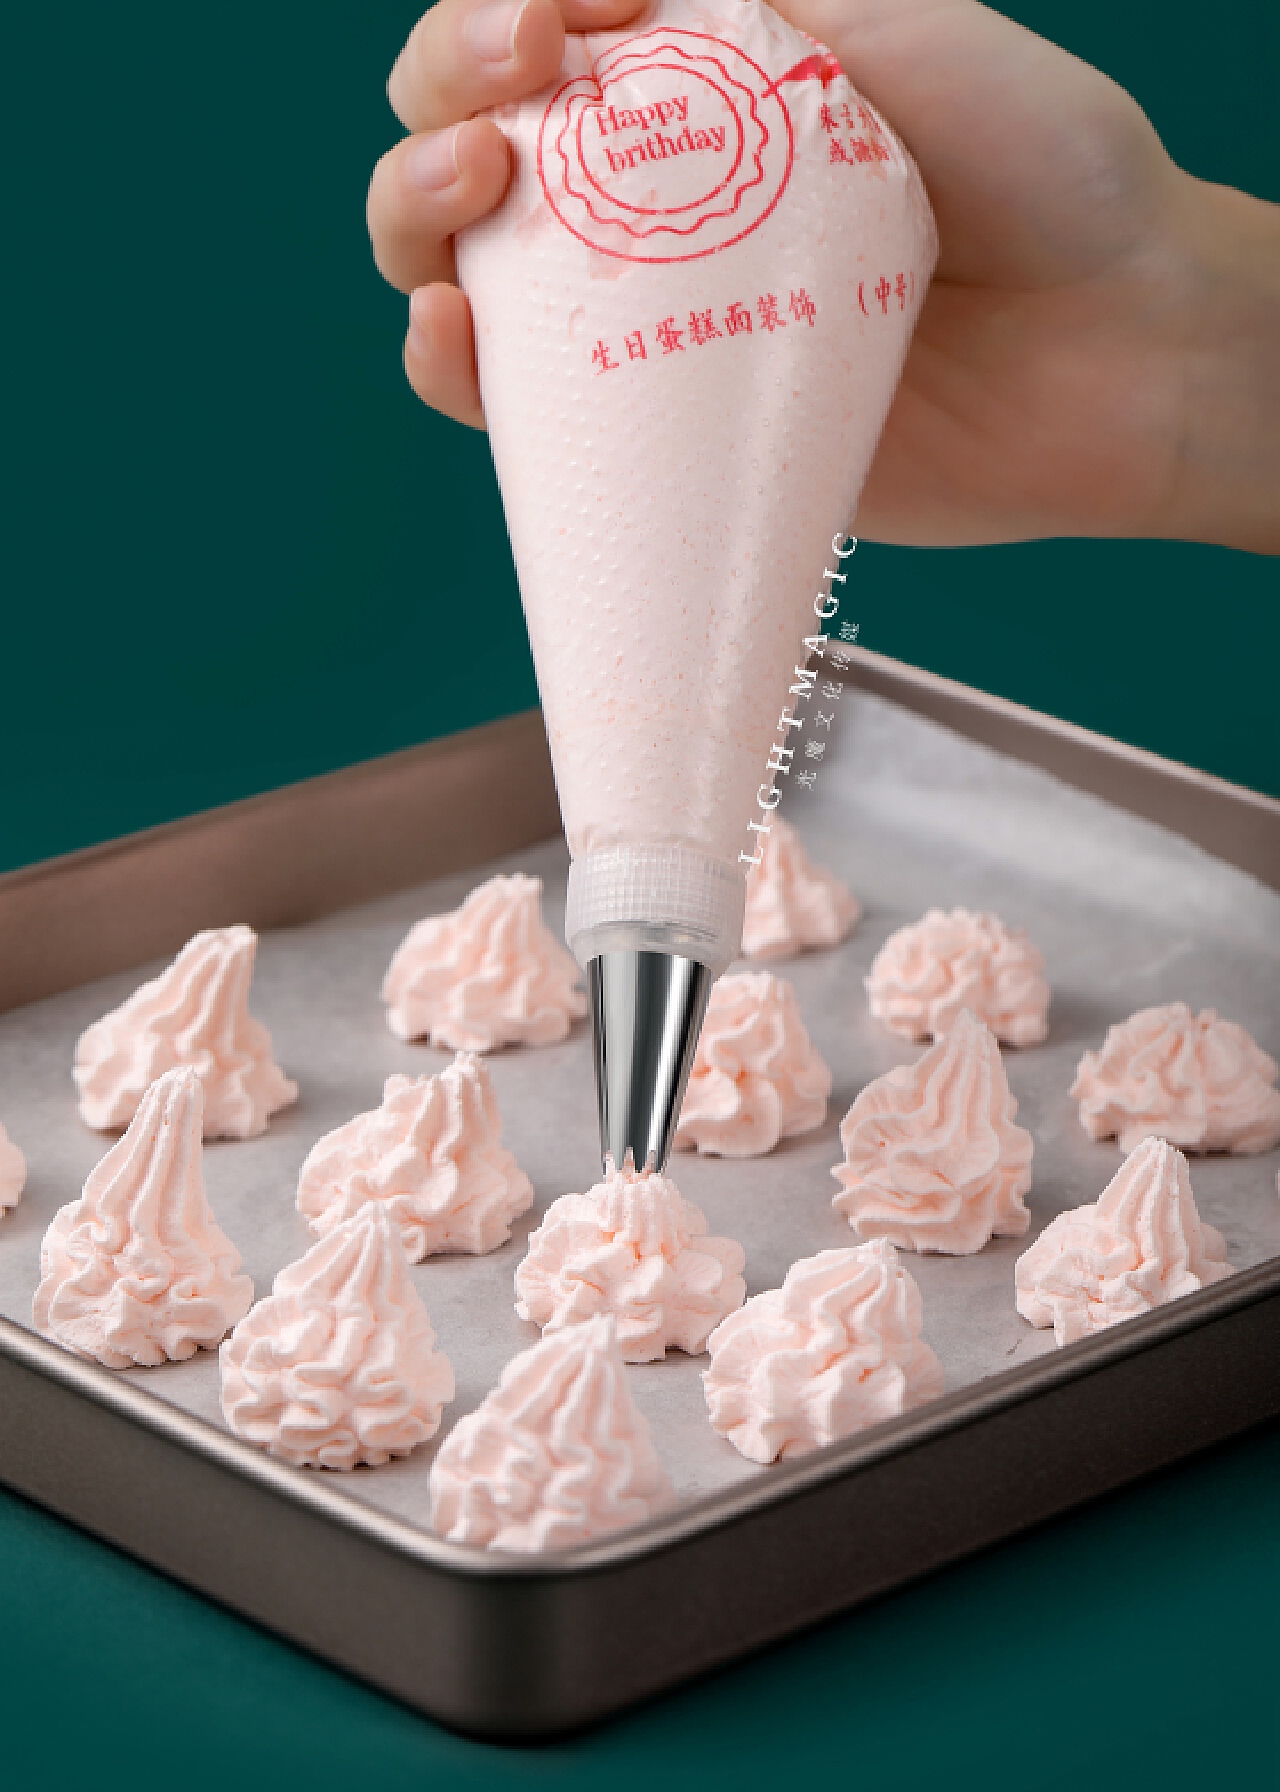 好质量裱花袋配14头裱花嘴 蛋糕烘焙DIY常用工具 热销厨房小工具-阿里巴巴